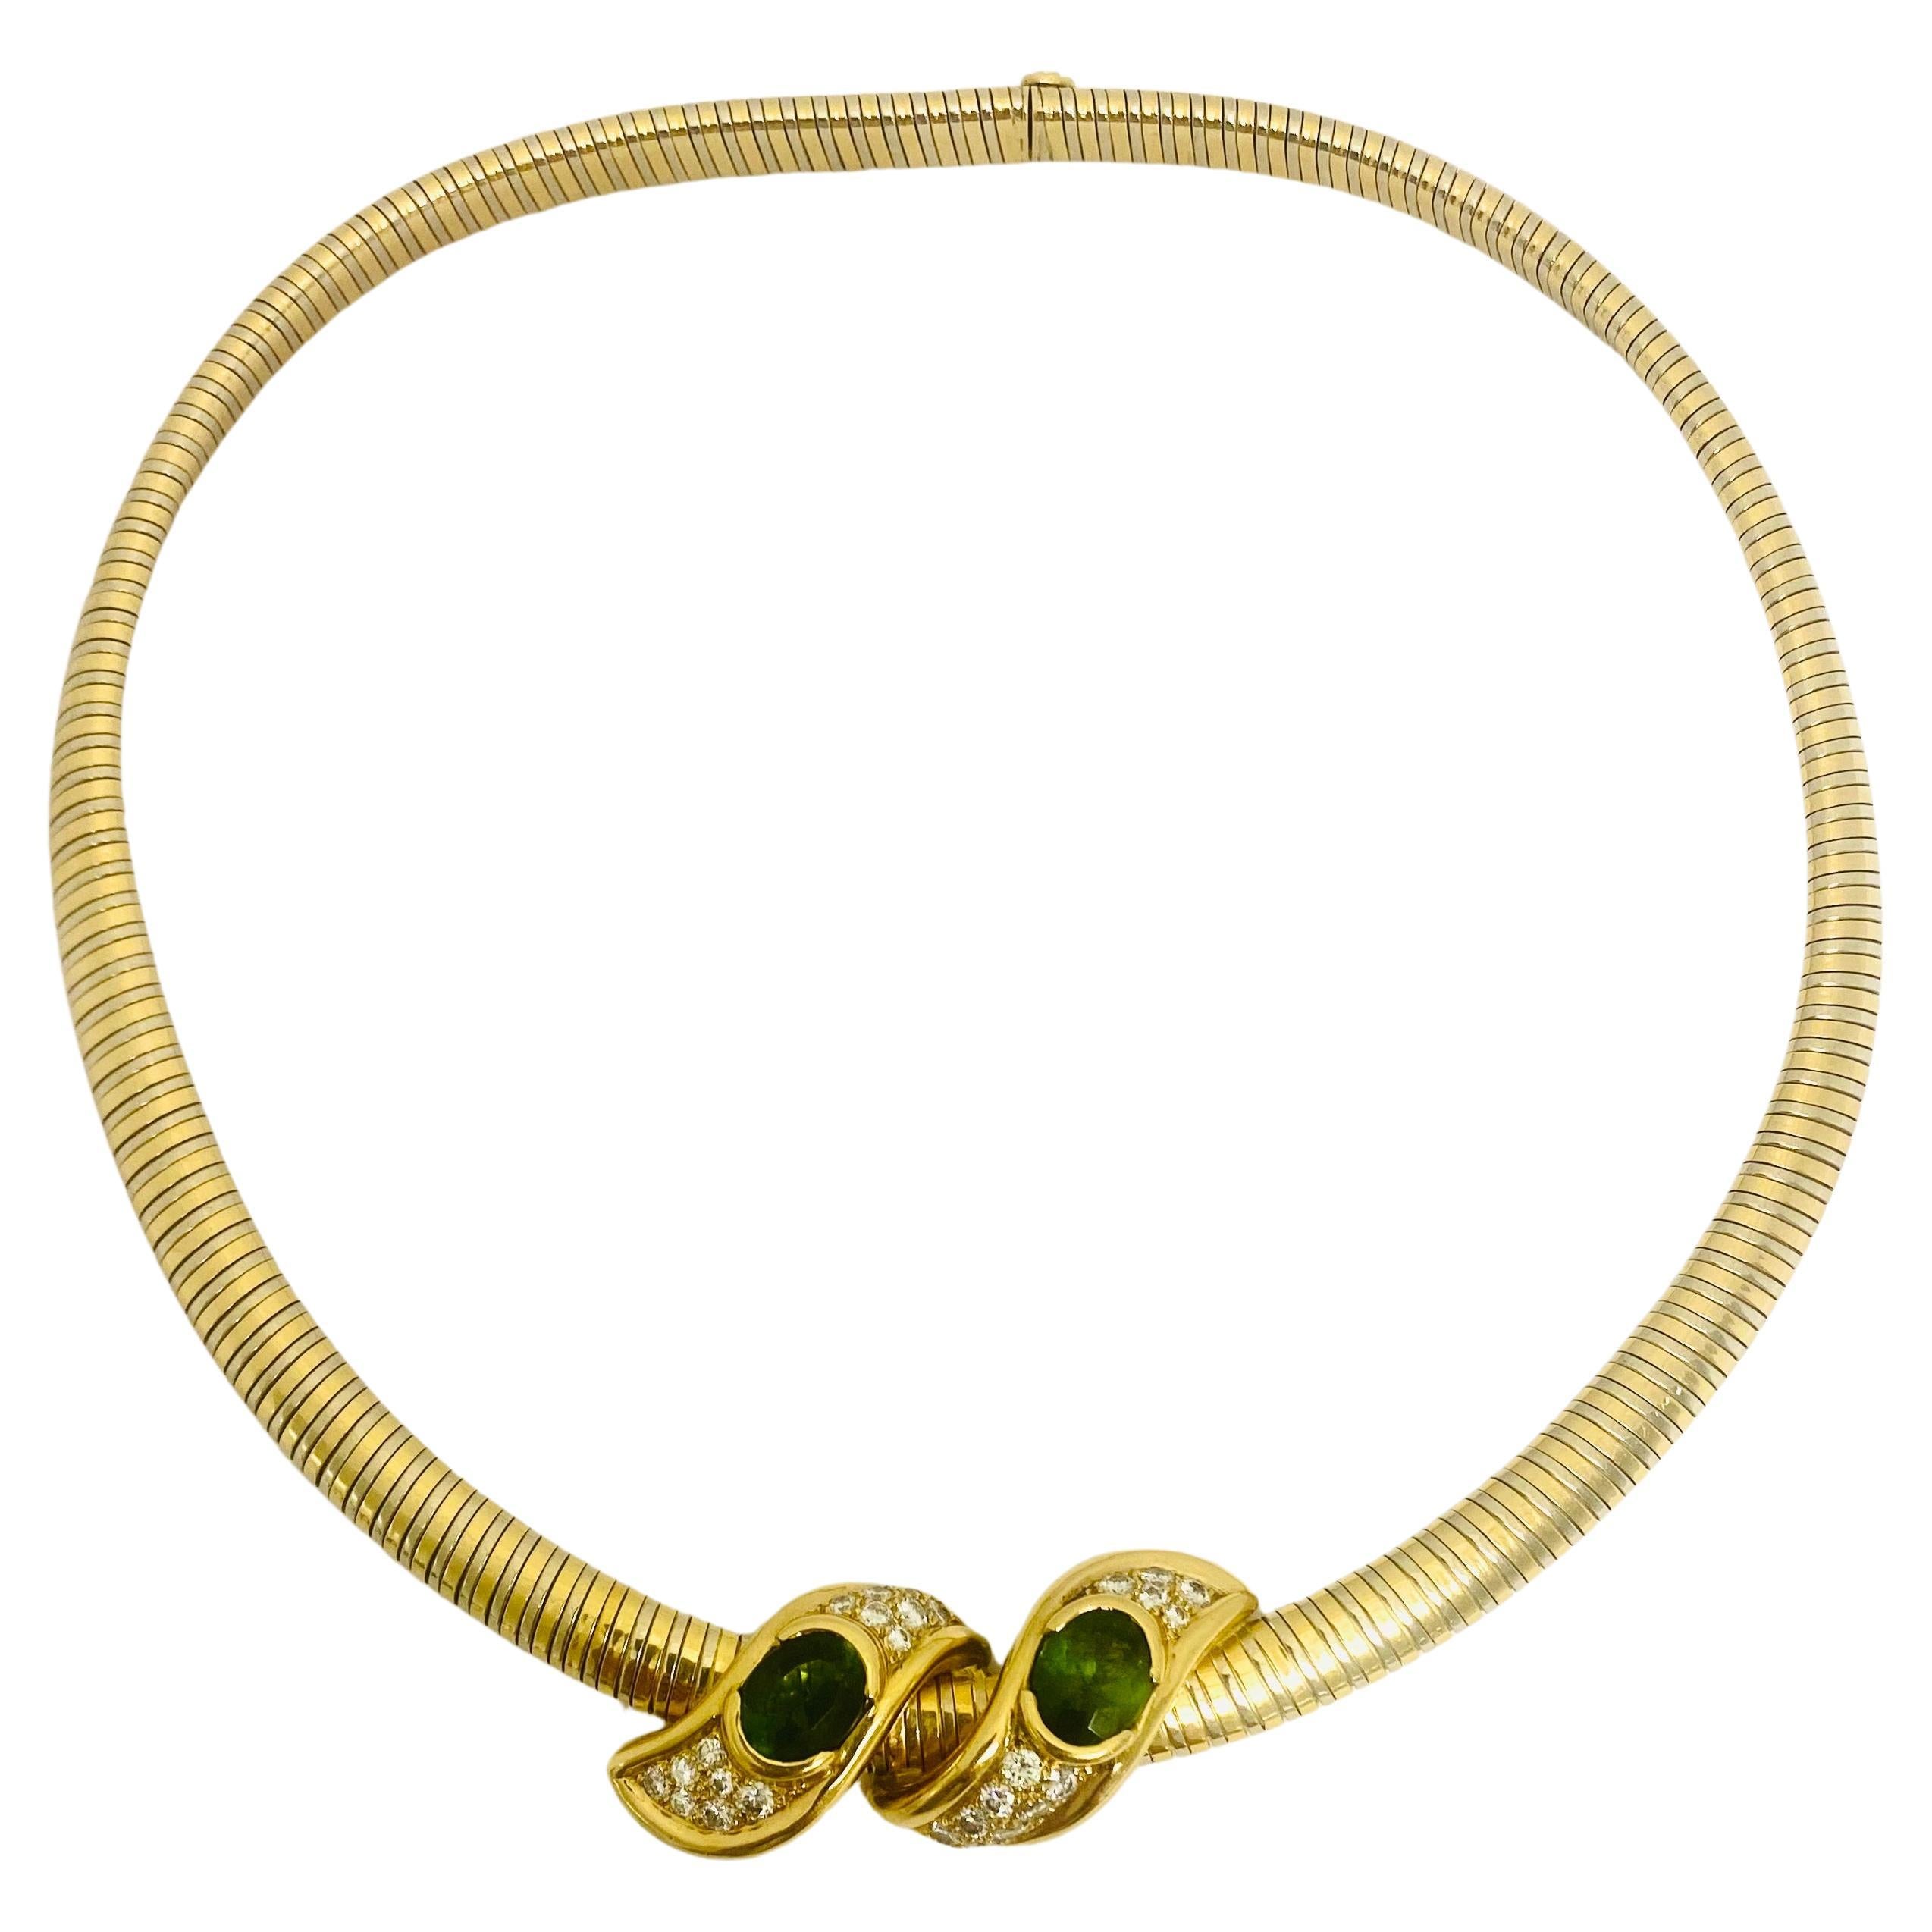 Rene Boivin Tubogas Collier vintage en or bicolore avec péridots et diamants